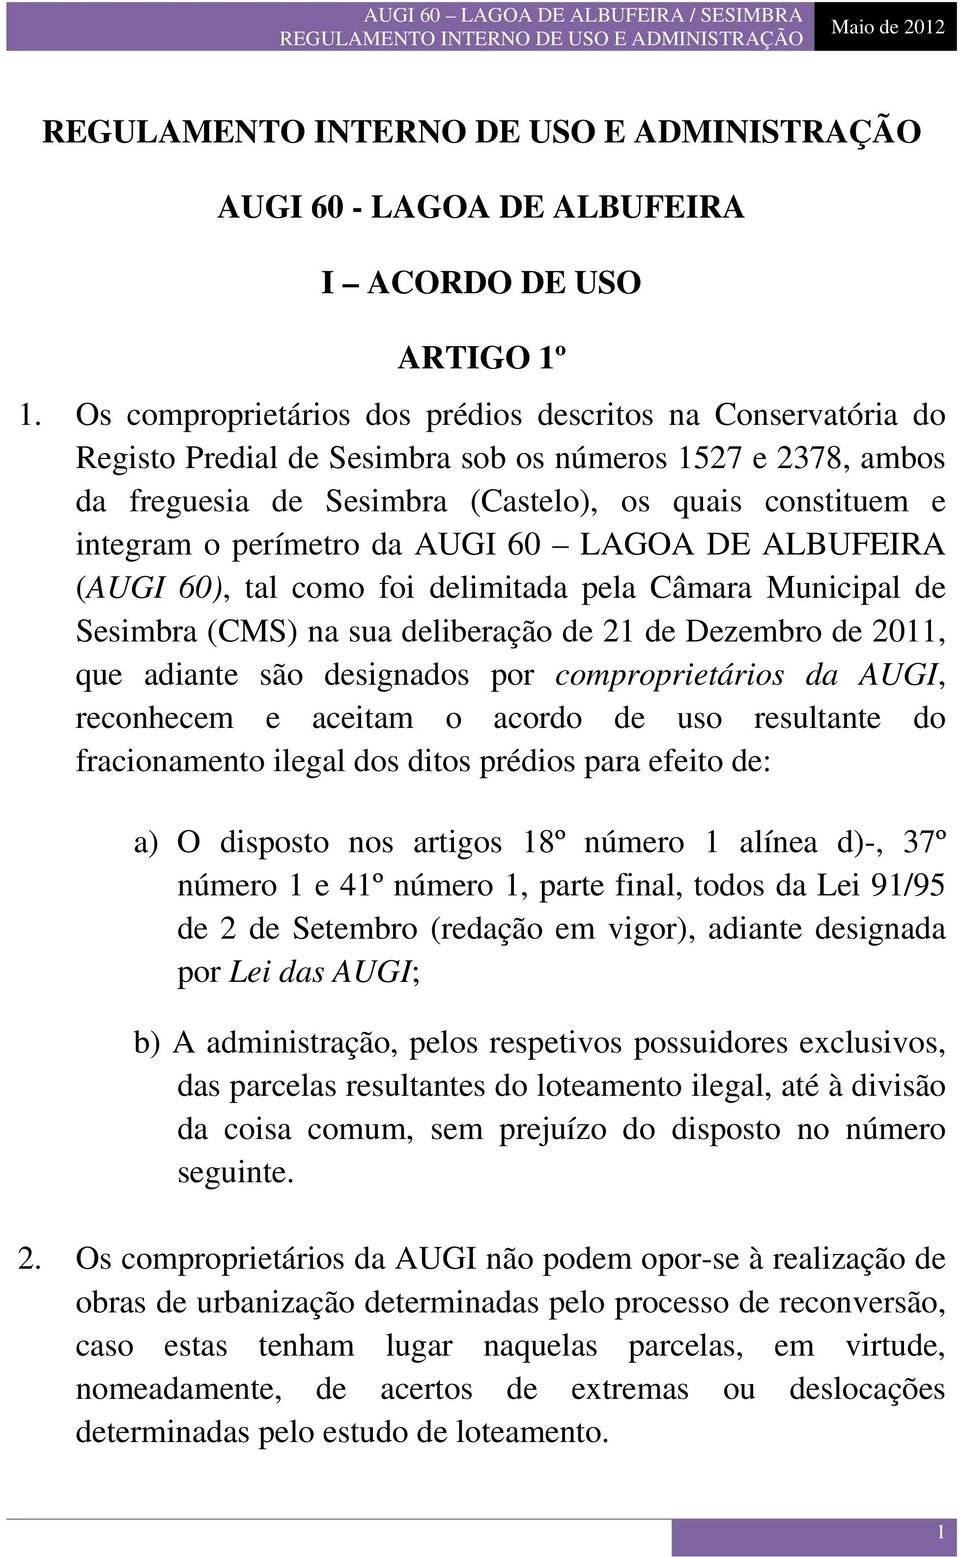 perímetro da AUGI 60 LAGOA DE ALBUFEIRA (AUGI 60), tal como foi delimitada pela Câmara Municipal de Sesimbra (CMS) na sua deliberação de 21 de Dezembro de 2011, que adiante são designados por